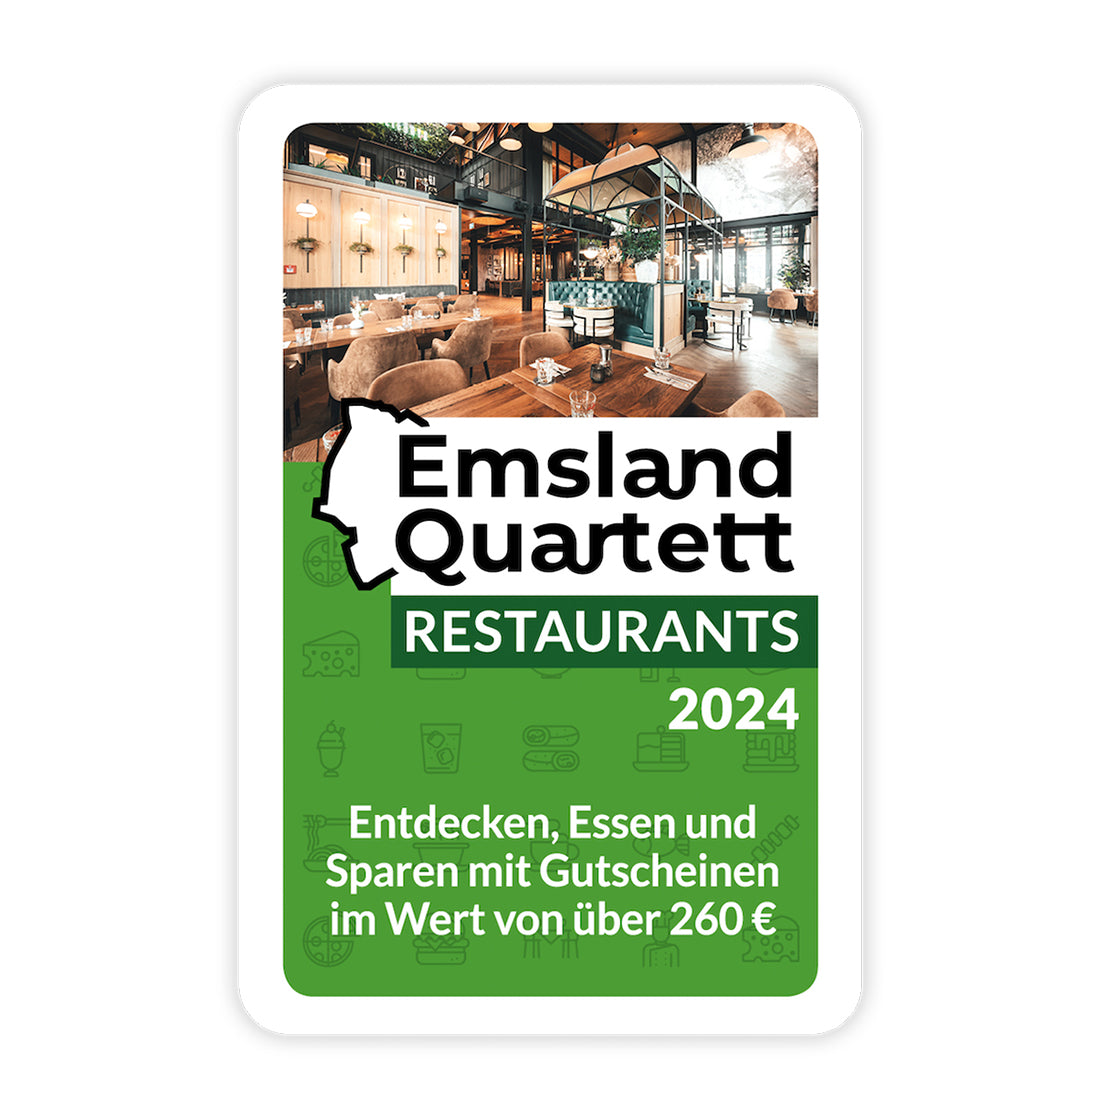 Emsland Quartett Restaurants 2024